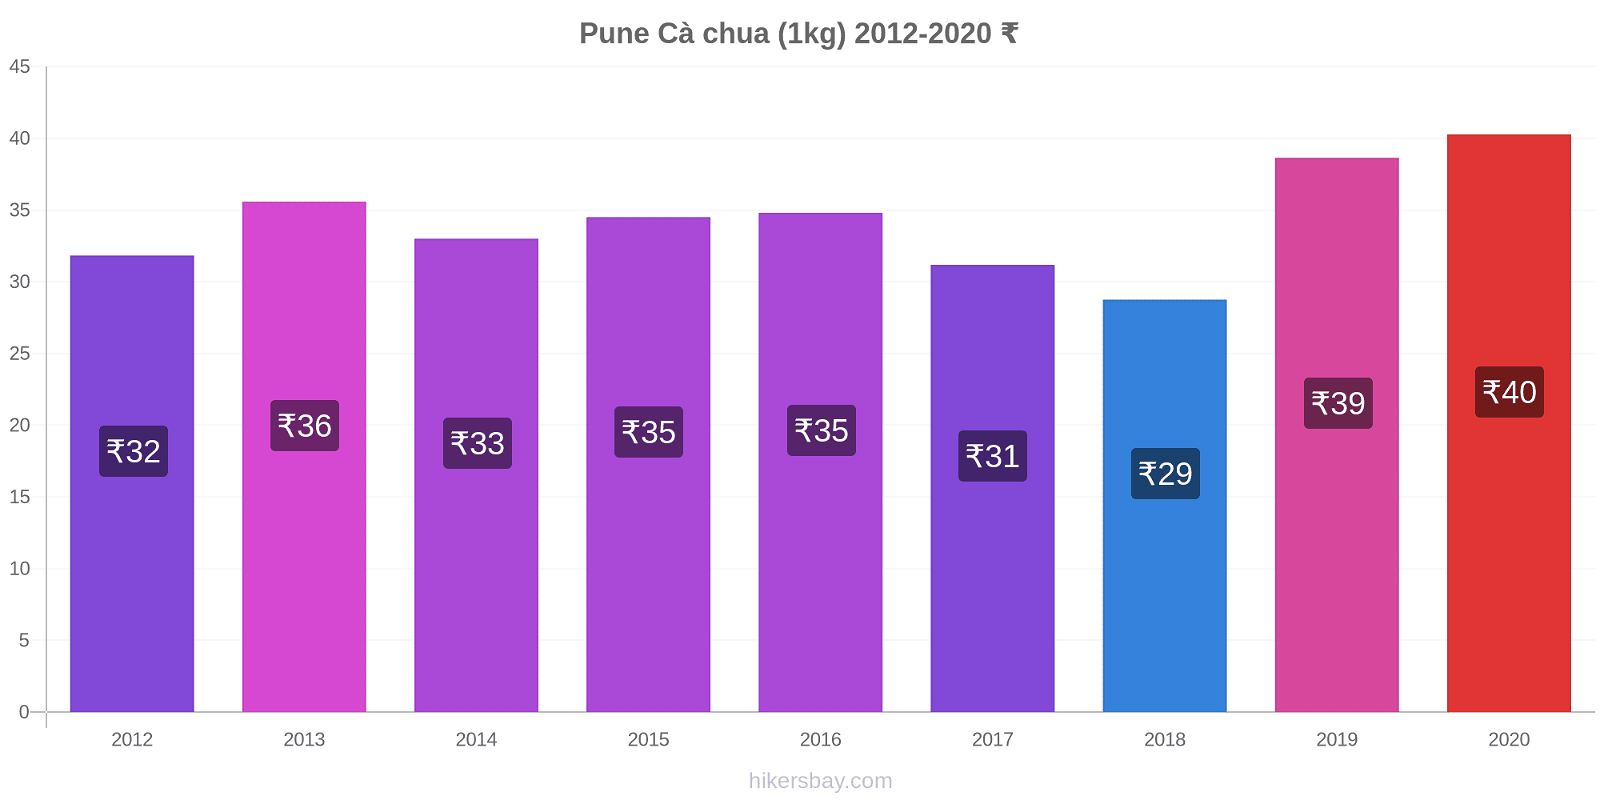 Pune thay đổi giá Cà chua (1kg) hikersbay.com